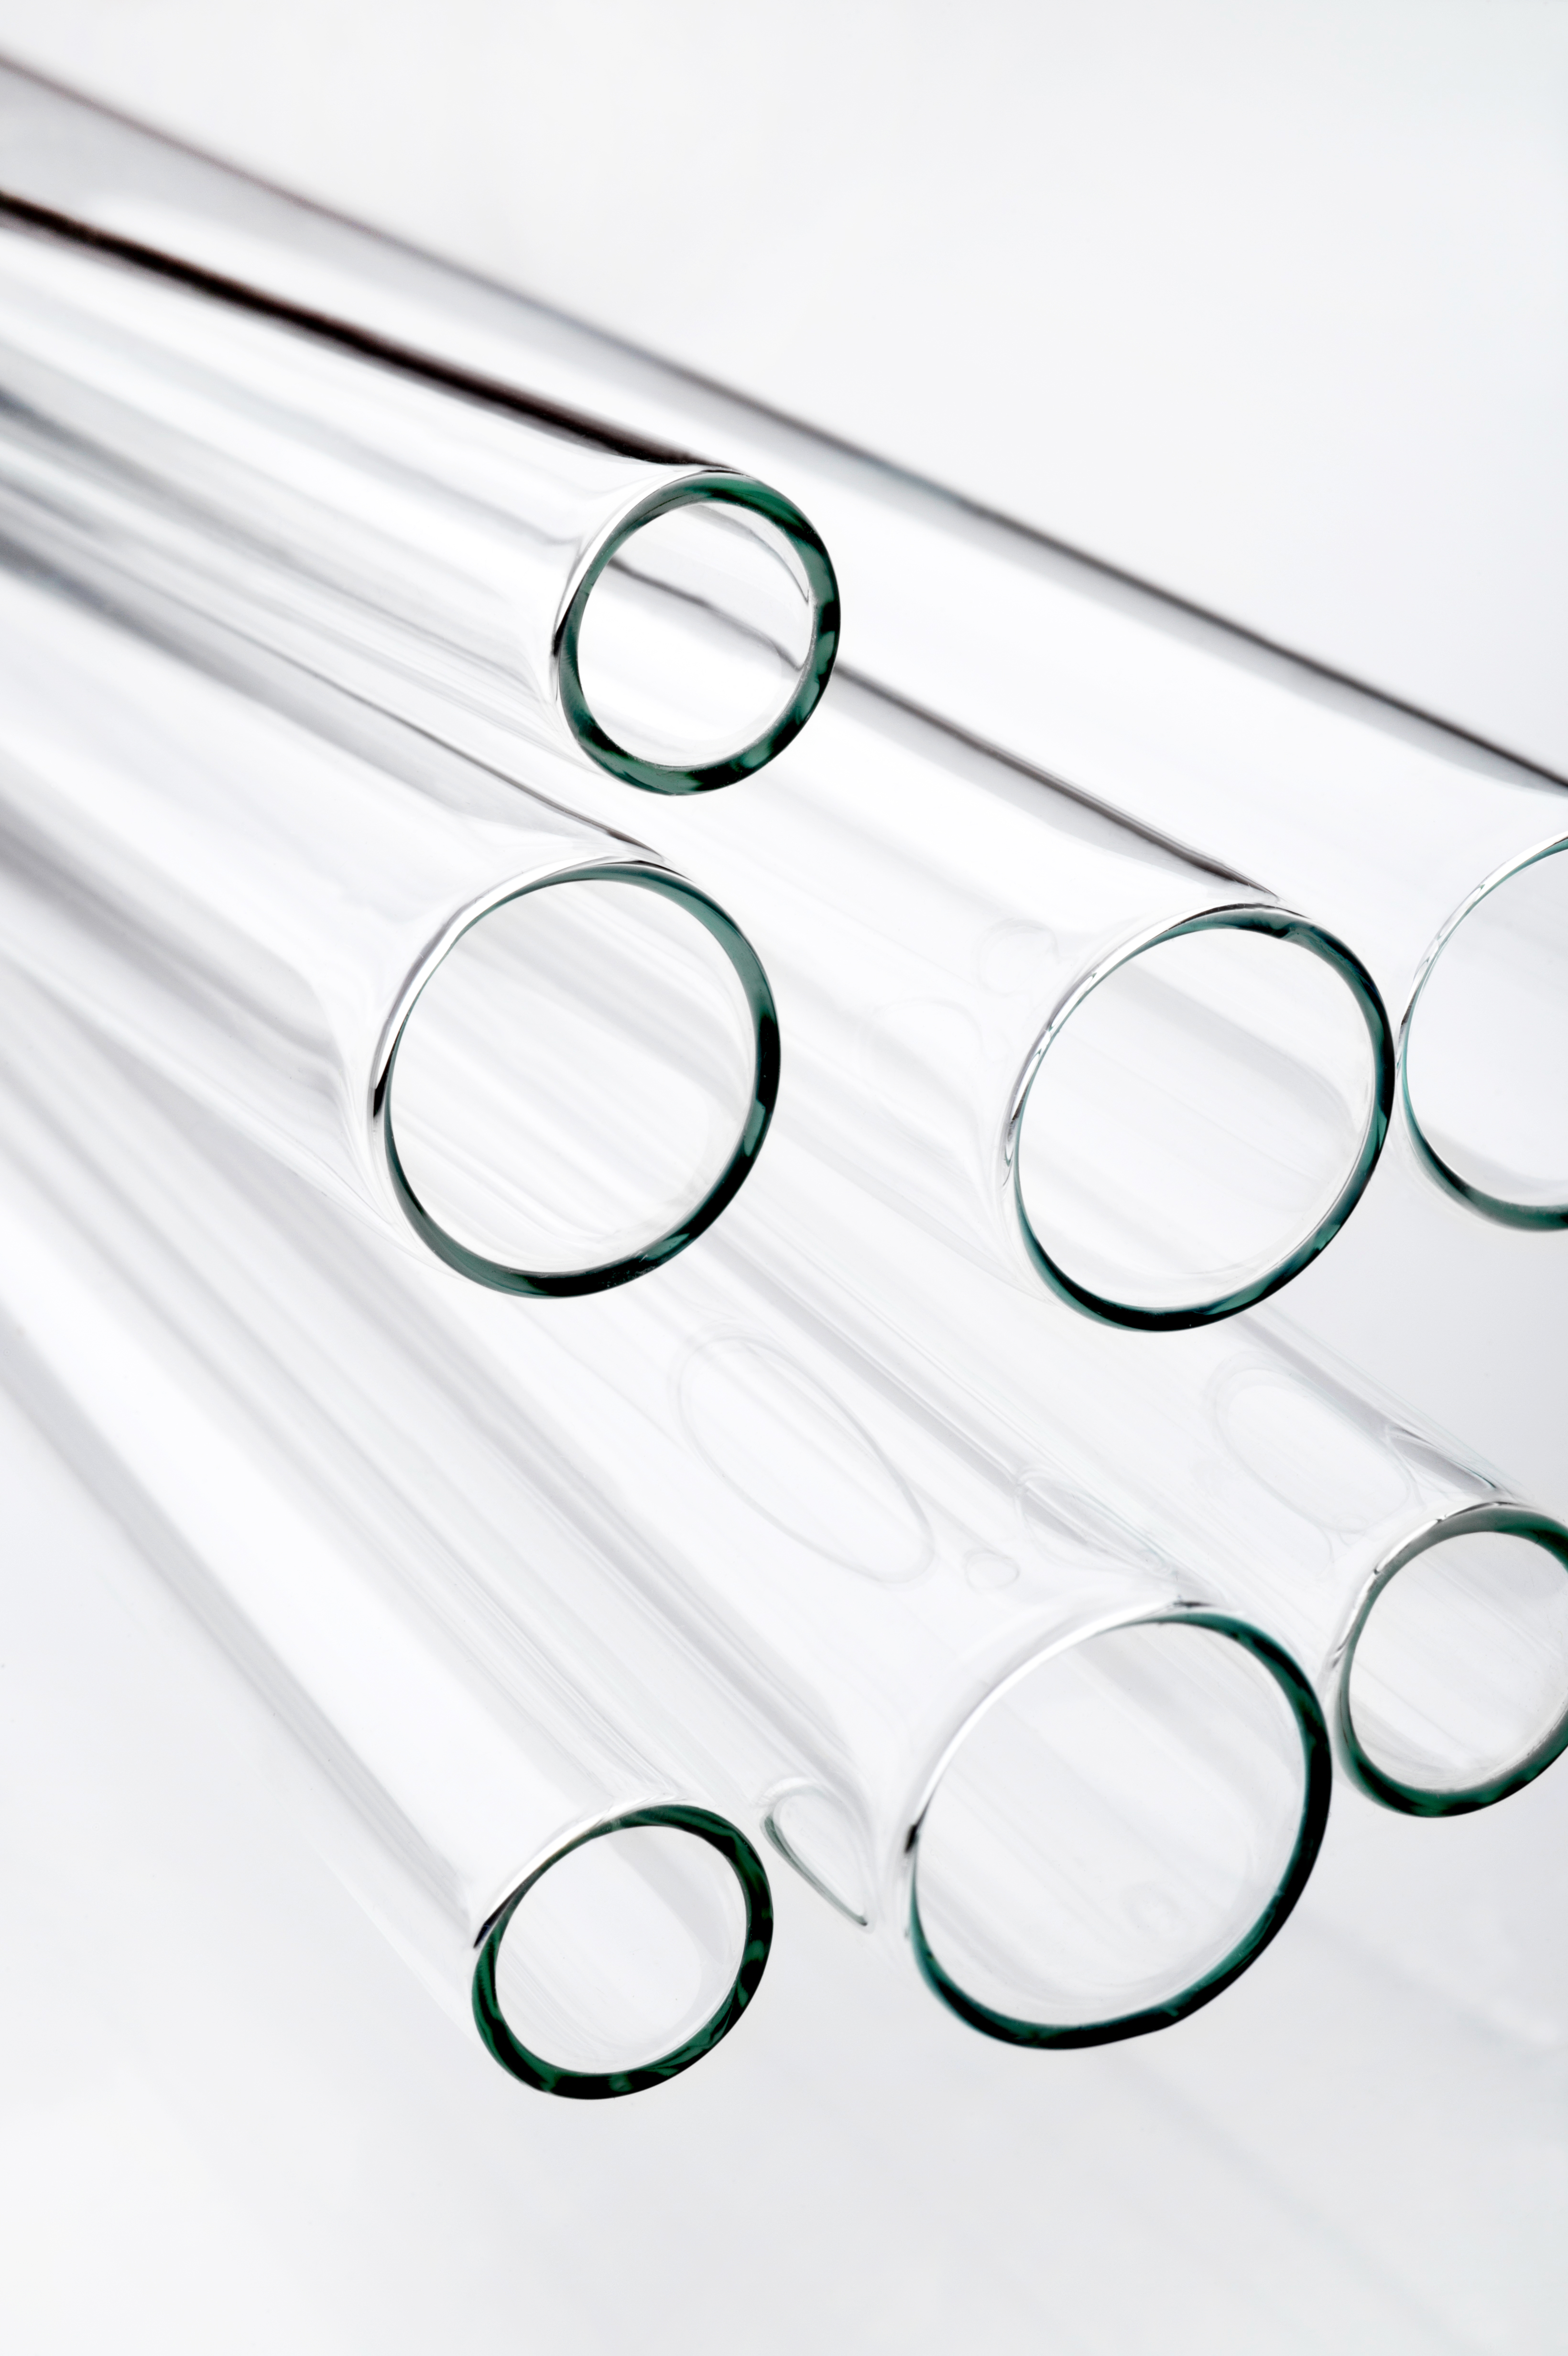 Borosilicate Glass Tube